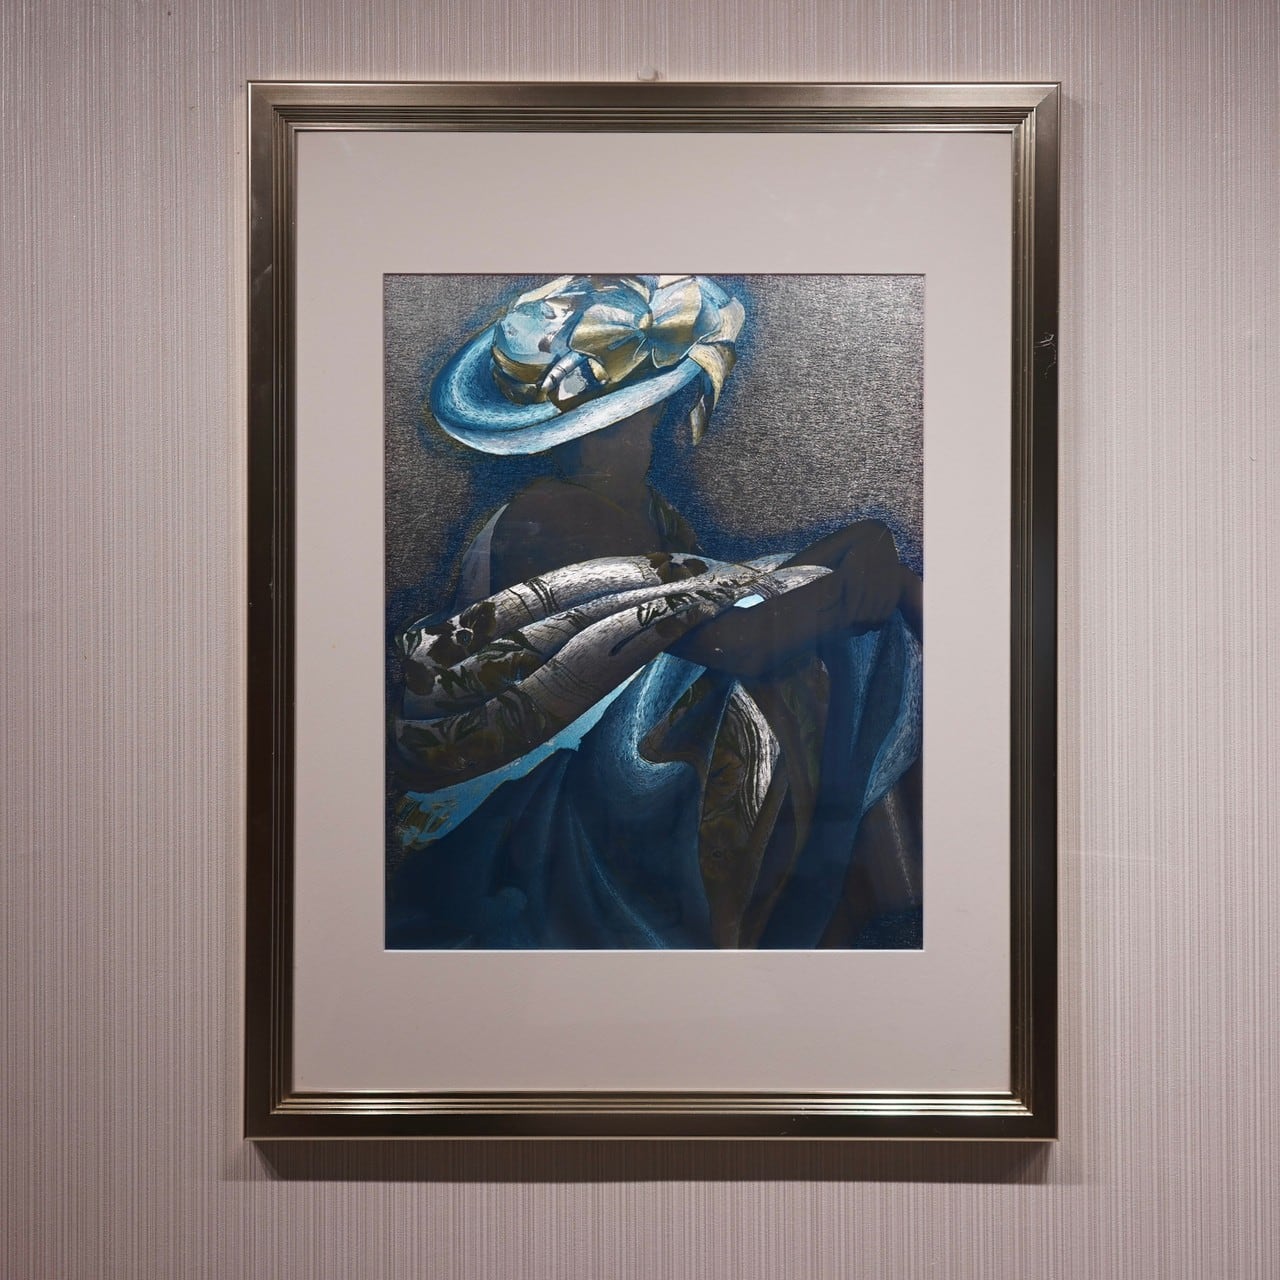 中古】アート 絵画 インテリア雑貨 壁掛け モダン 北欧 抽象画 78×60